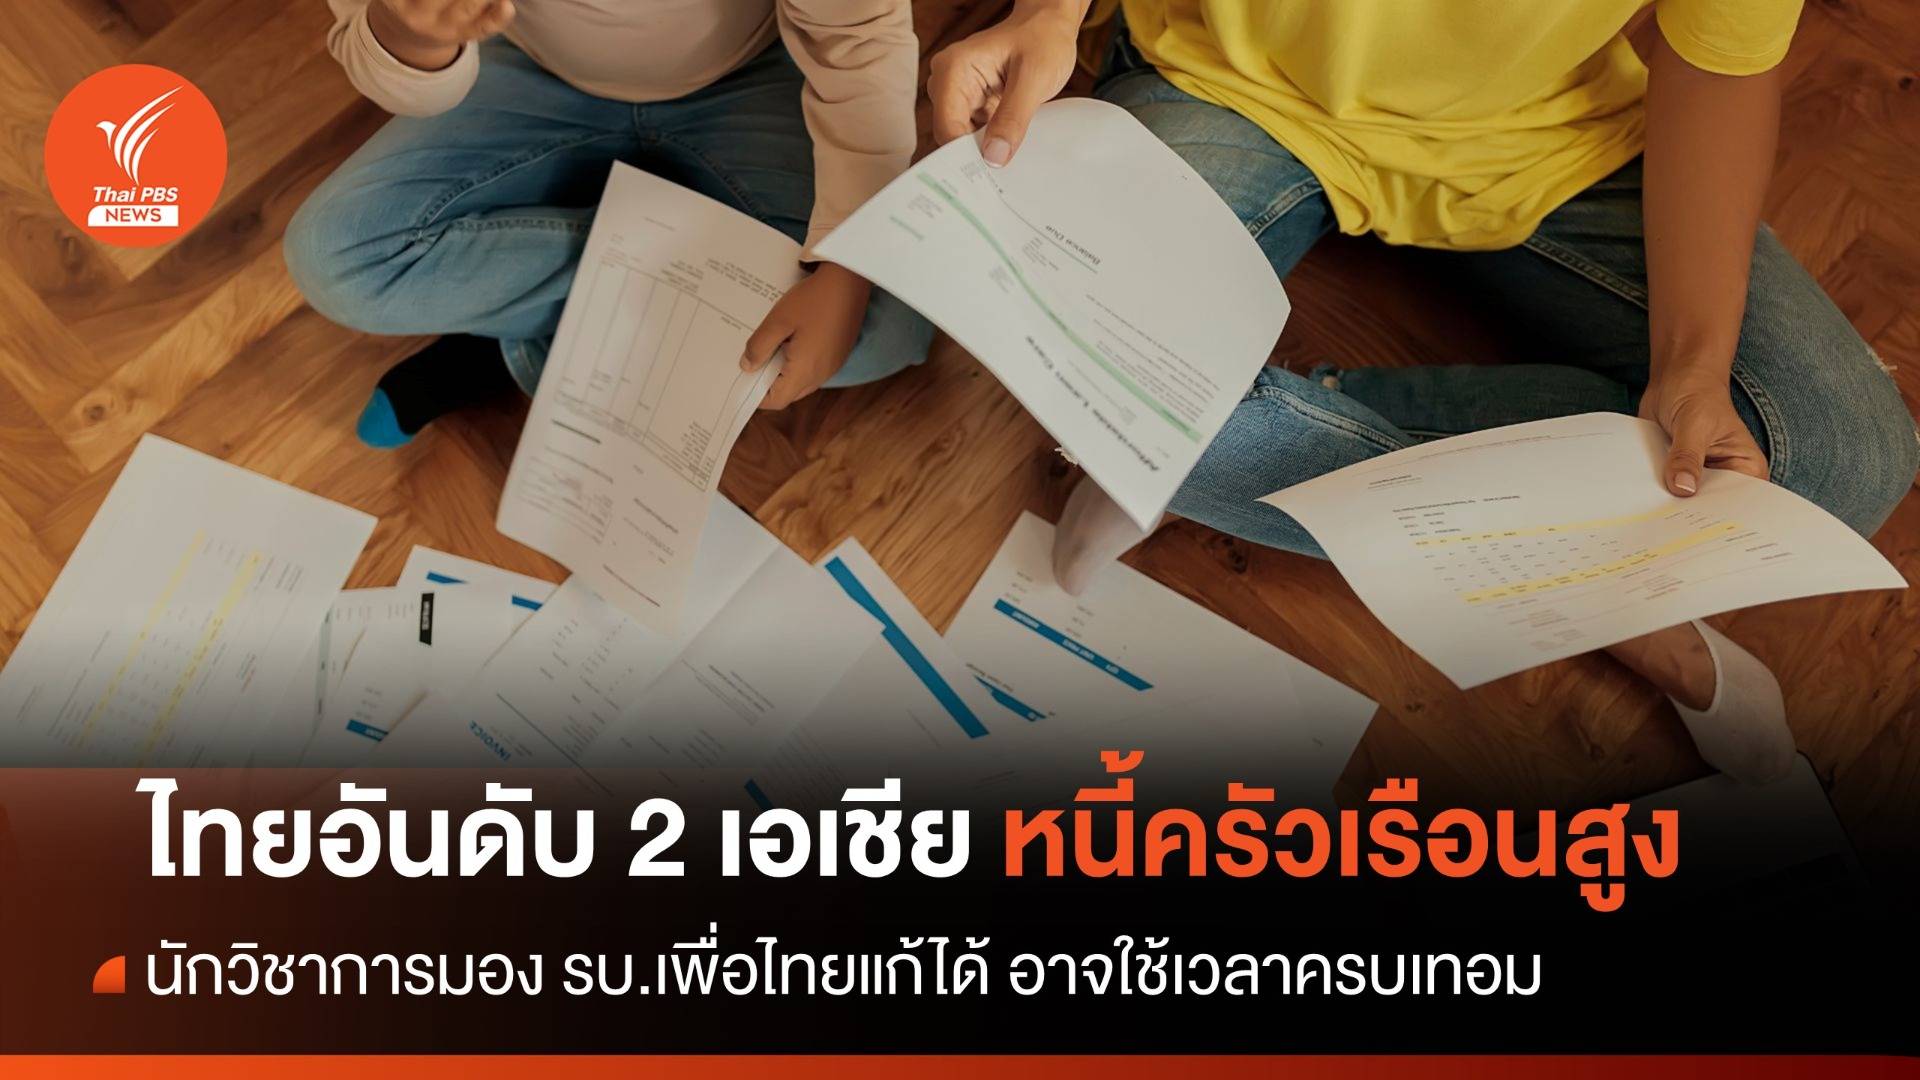 หนี้ครัวเรือนไทยสูง - TDRI คาดรัฐบาลแก้ได้ คงใกล้หมดเทอม